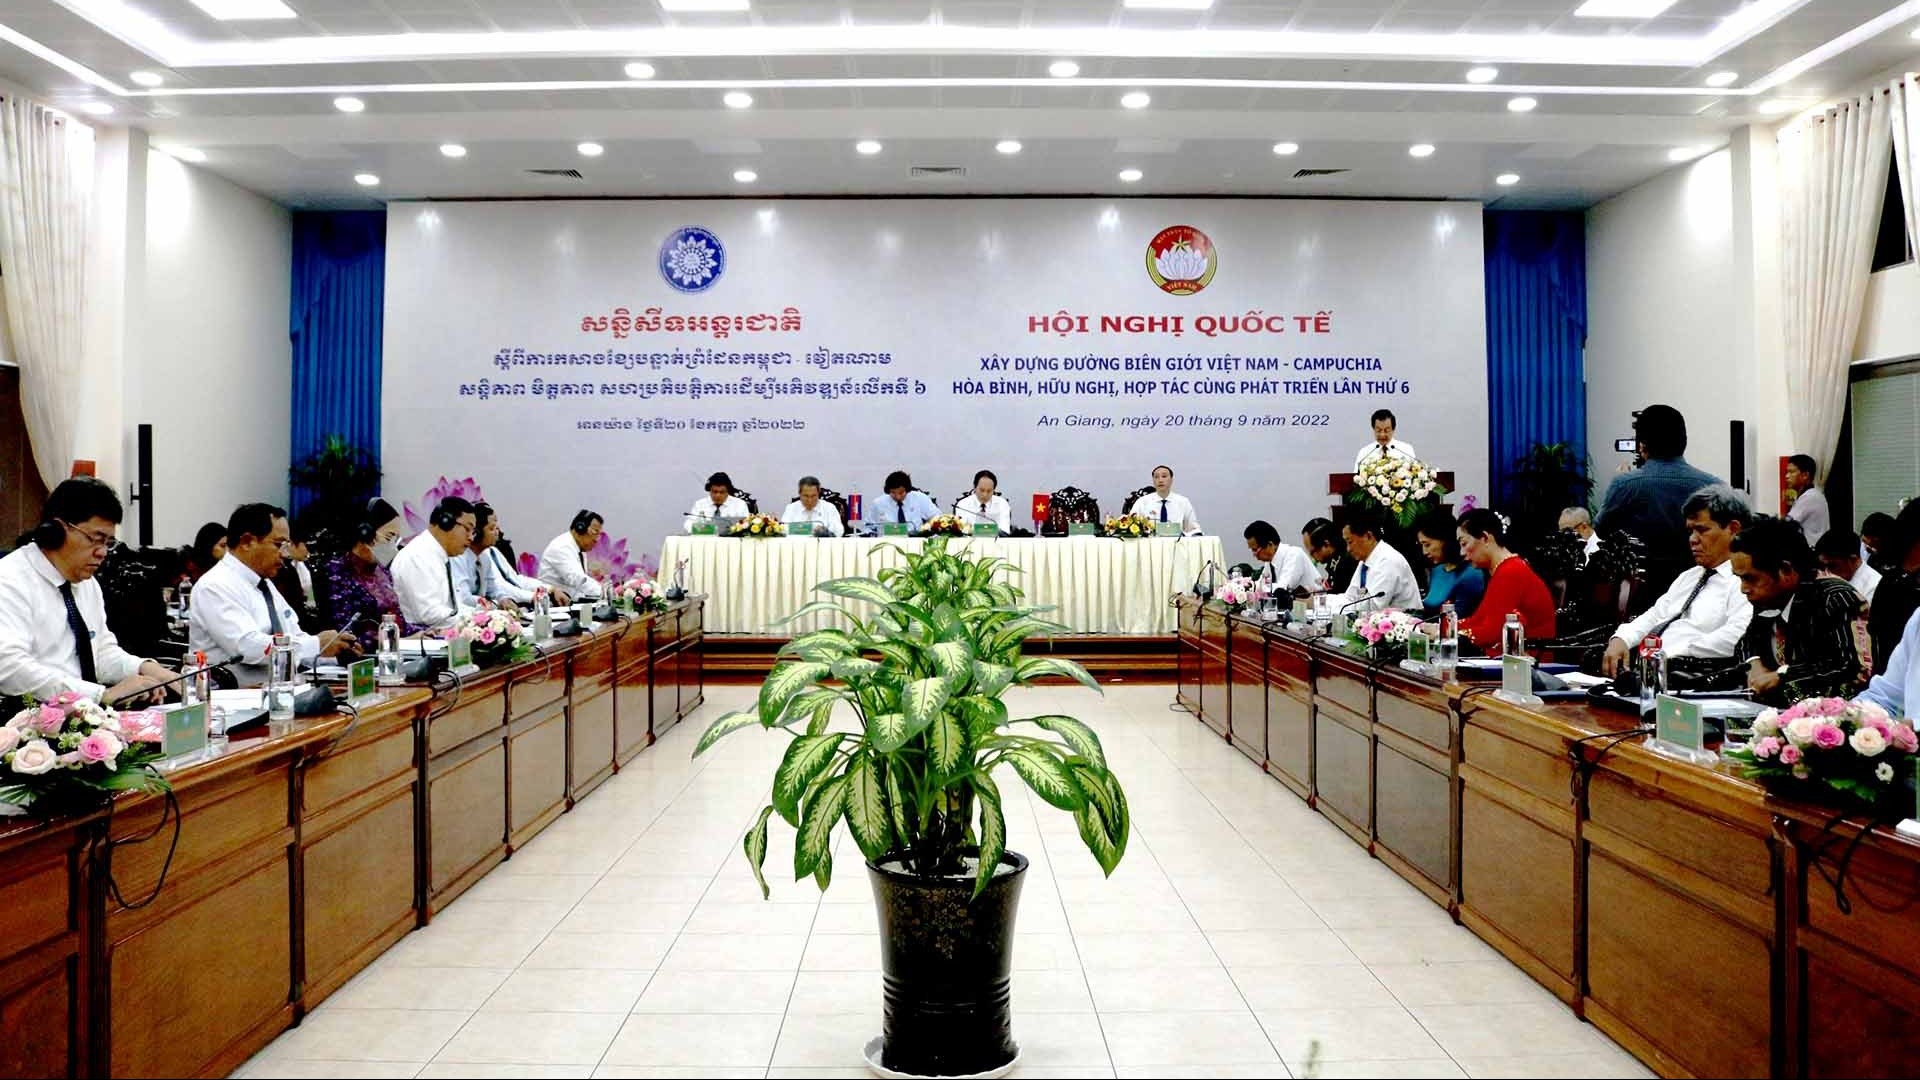 Xây dựng đường biên giới Việt Nam-Campuchia hòa bình, hữu nghị, hợp tác cùng phát triển